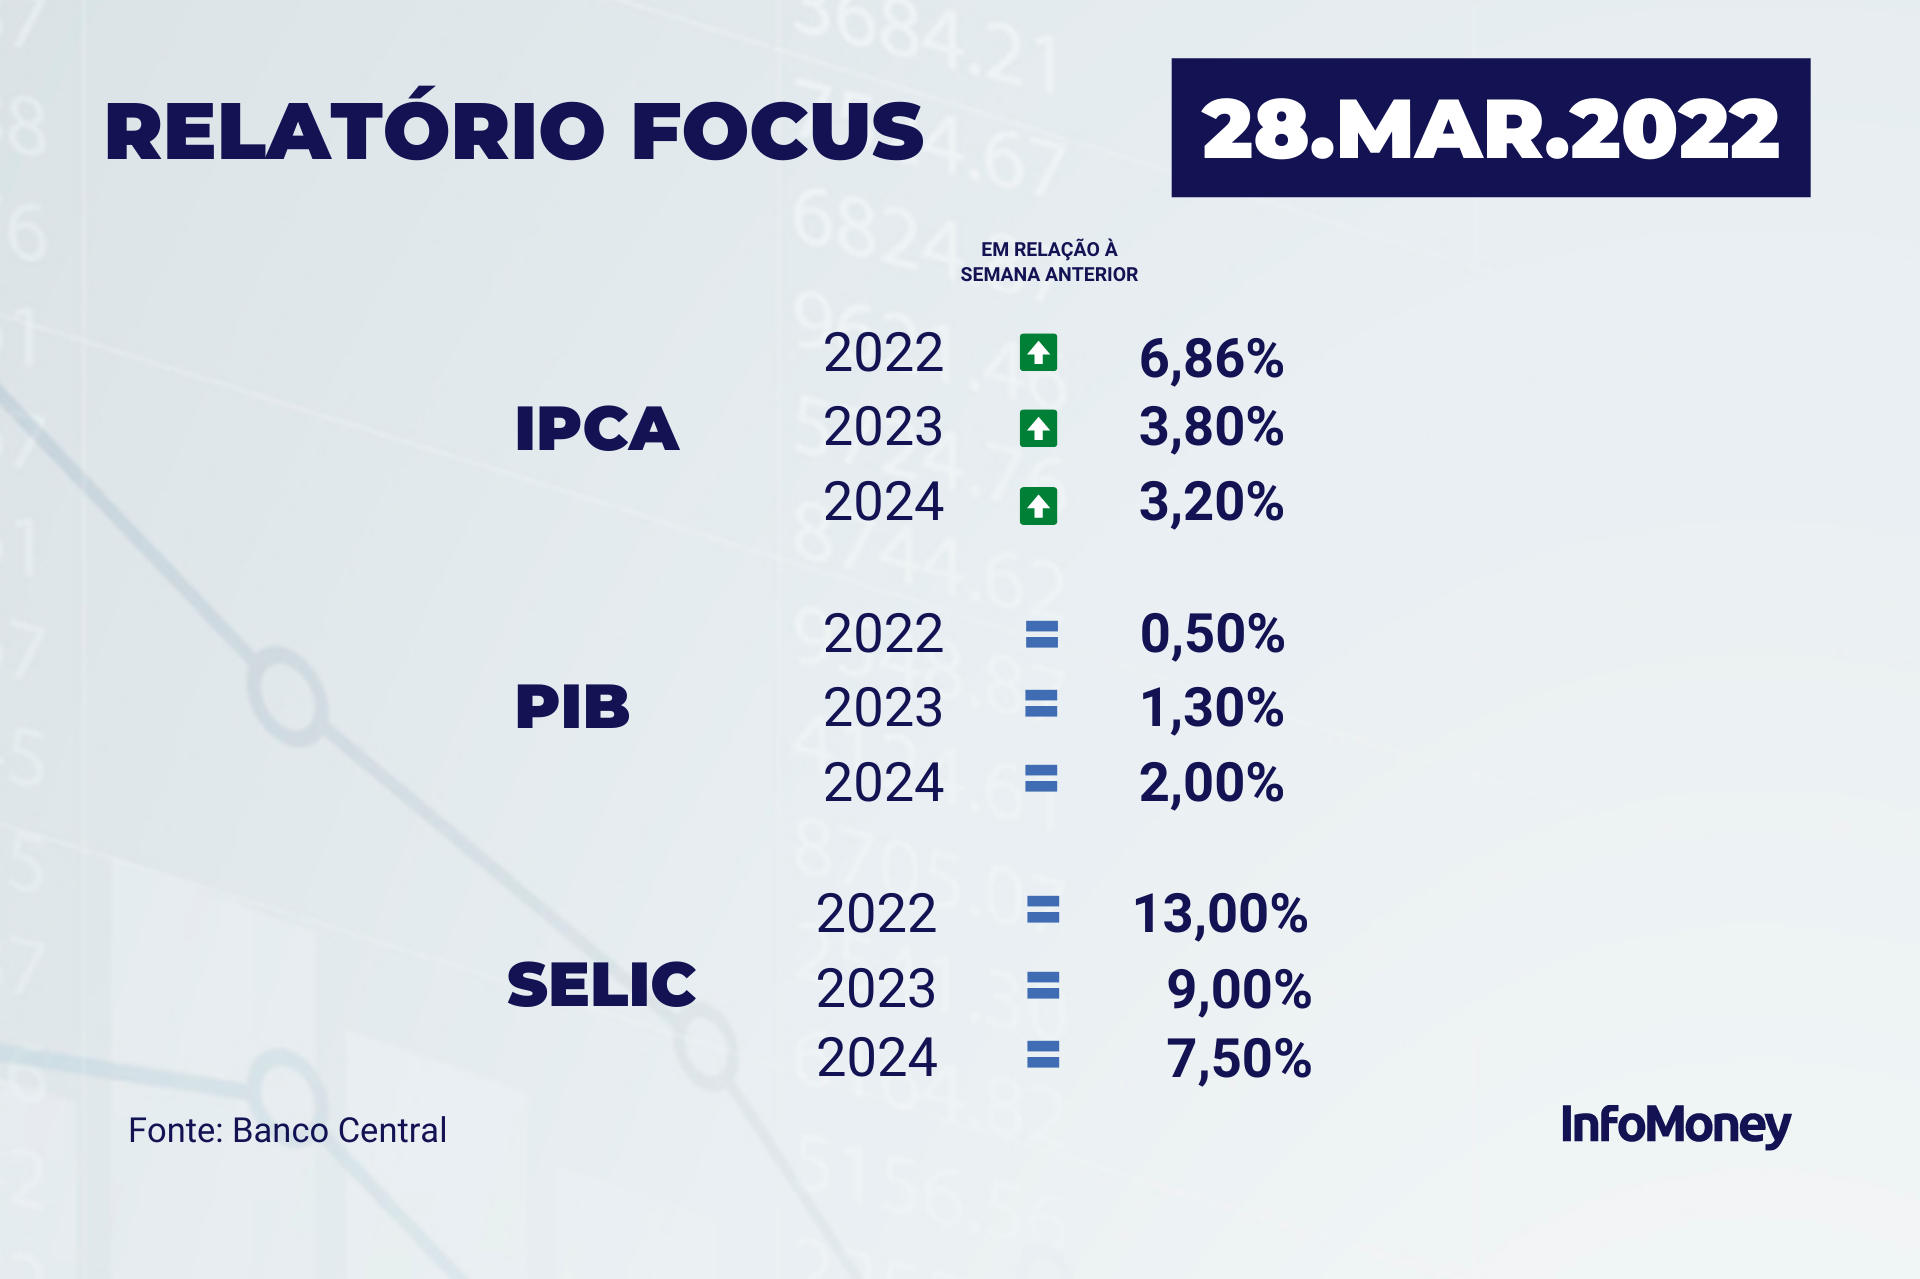 Boletim Focus: projeção para a inflação de 2023 volta a cair, para 5,69%, e  a do PIB sobe para 1,68%